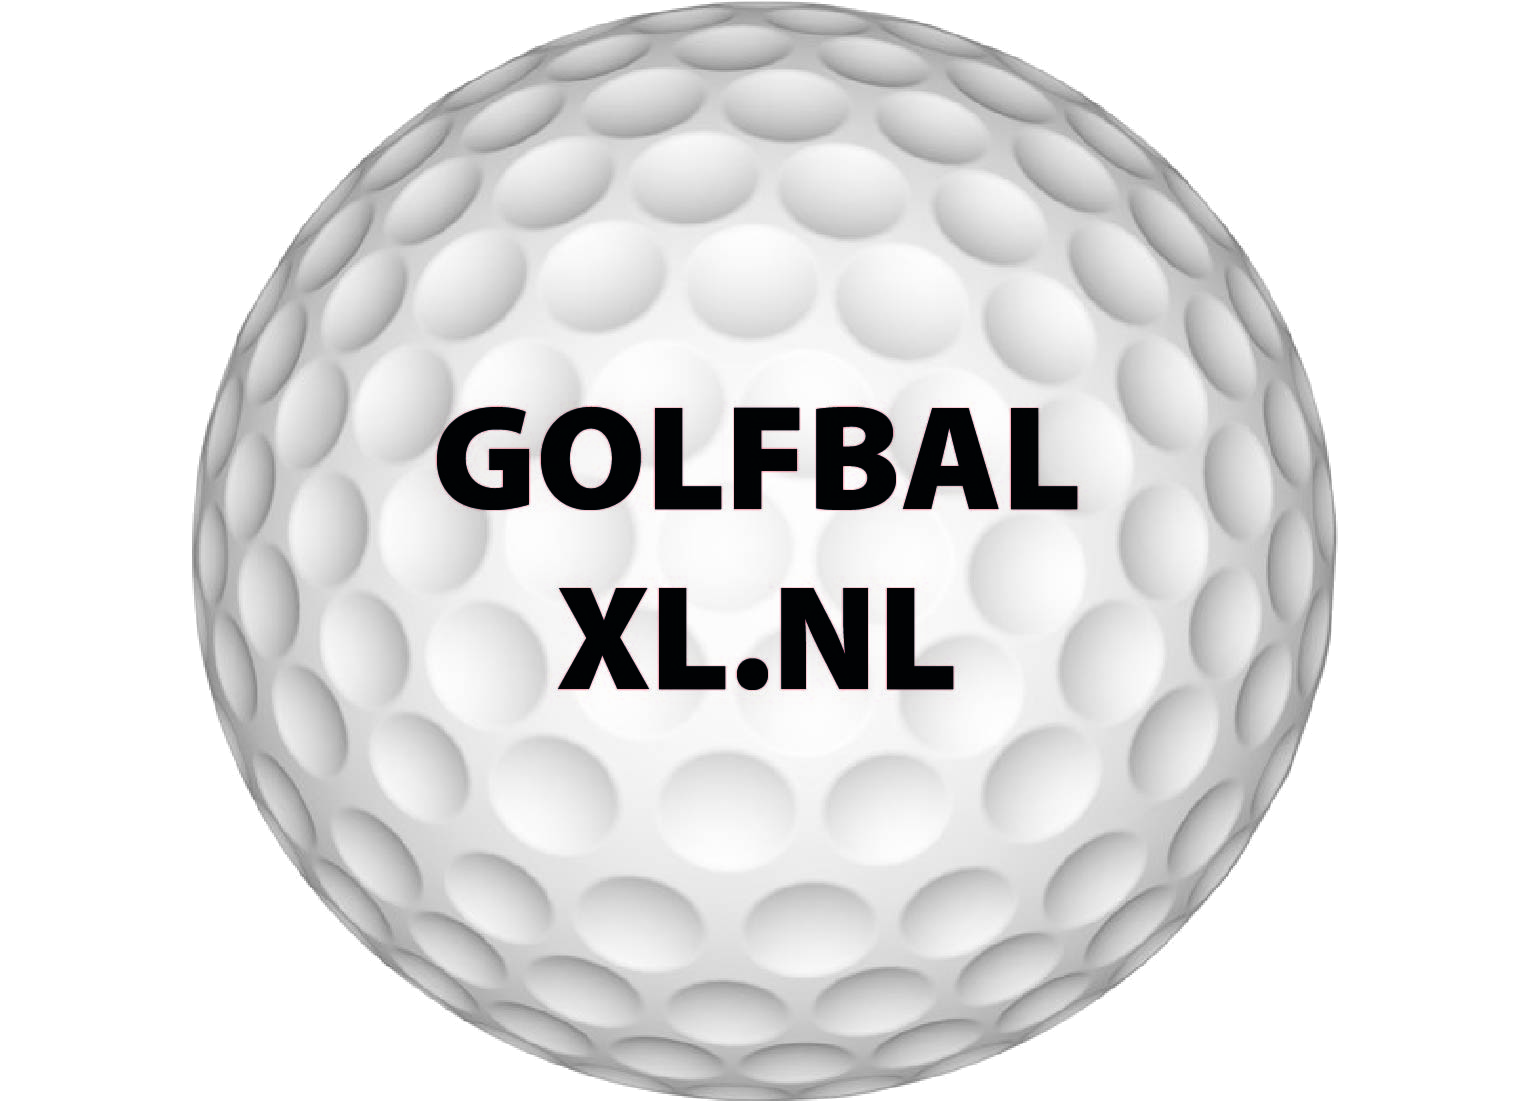 Huidige Bedrog Duiker Callaway golfbal laten bedrukken? Zo klaar bij Golfbalxl.nl!